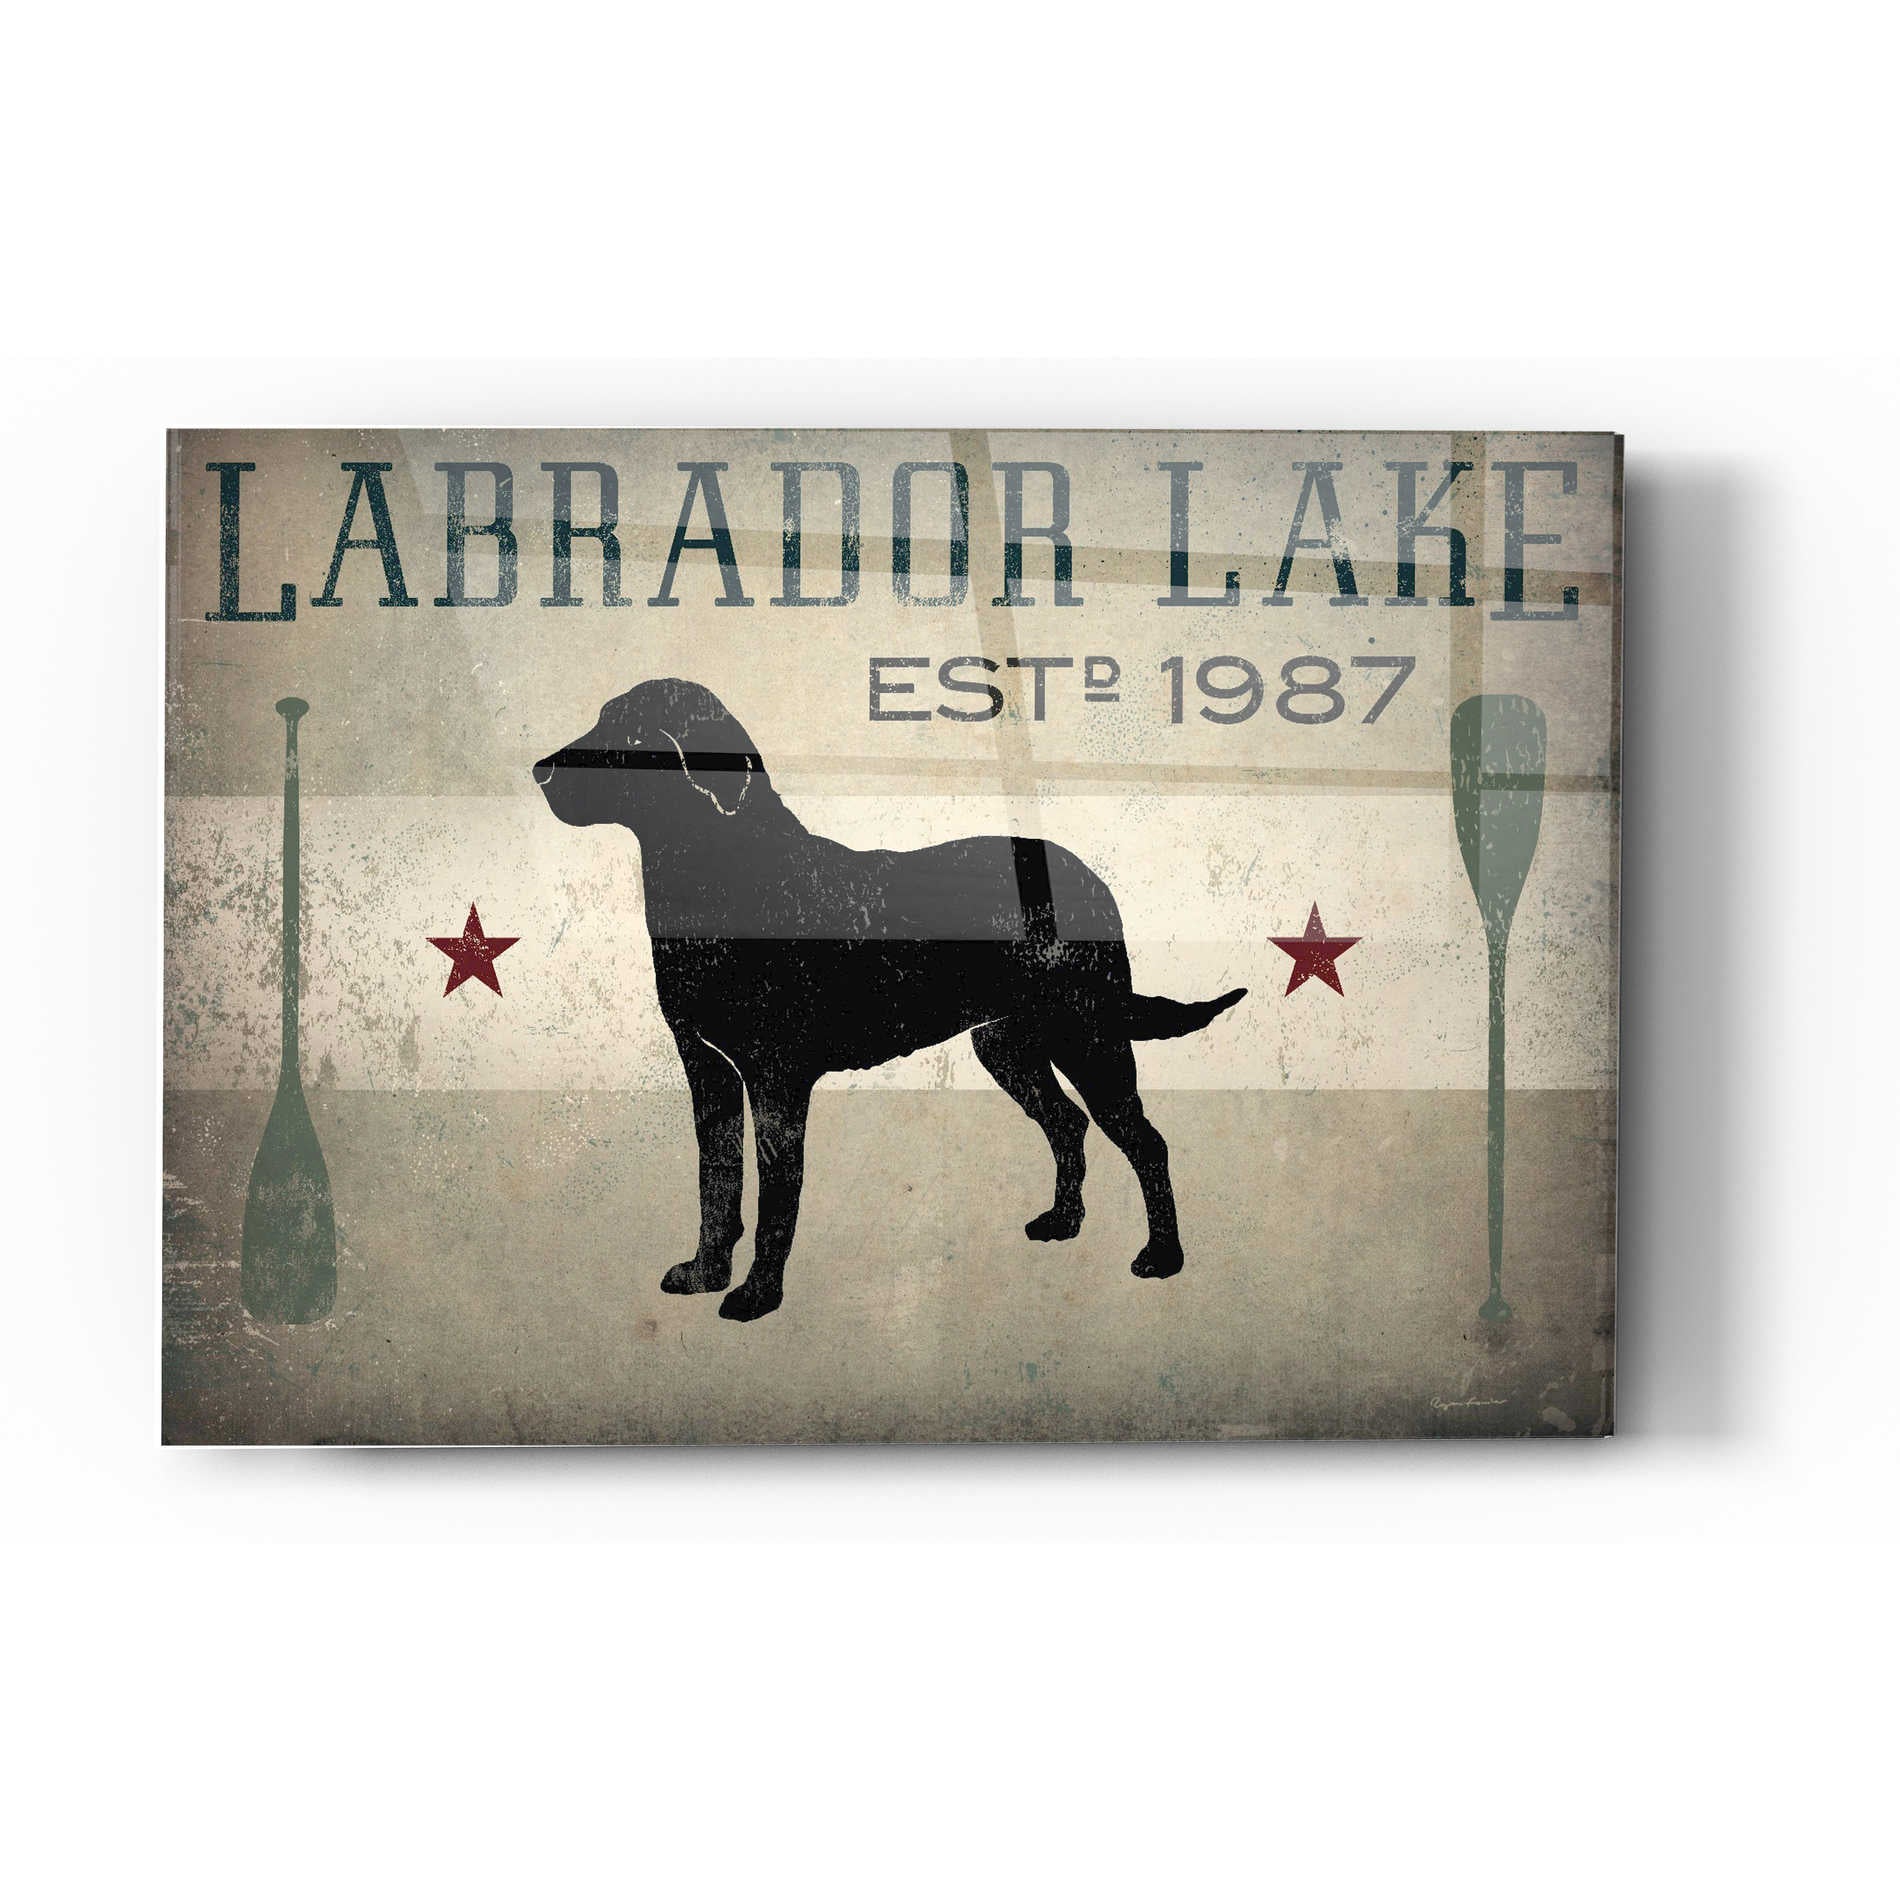 Epic Art 'Labrador Lake' by Ryan Fowler, Acrylic Glass Wall Art,16x24